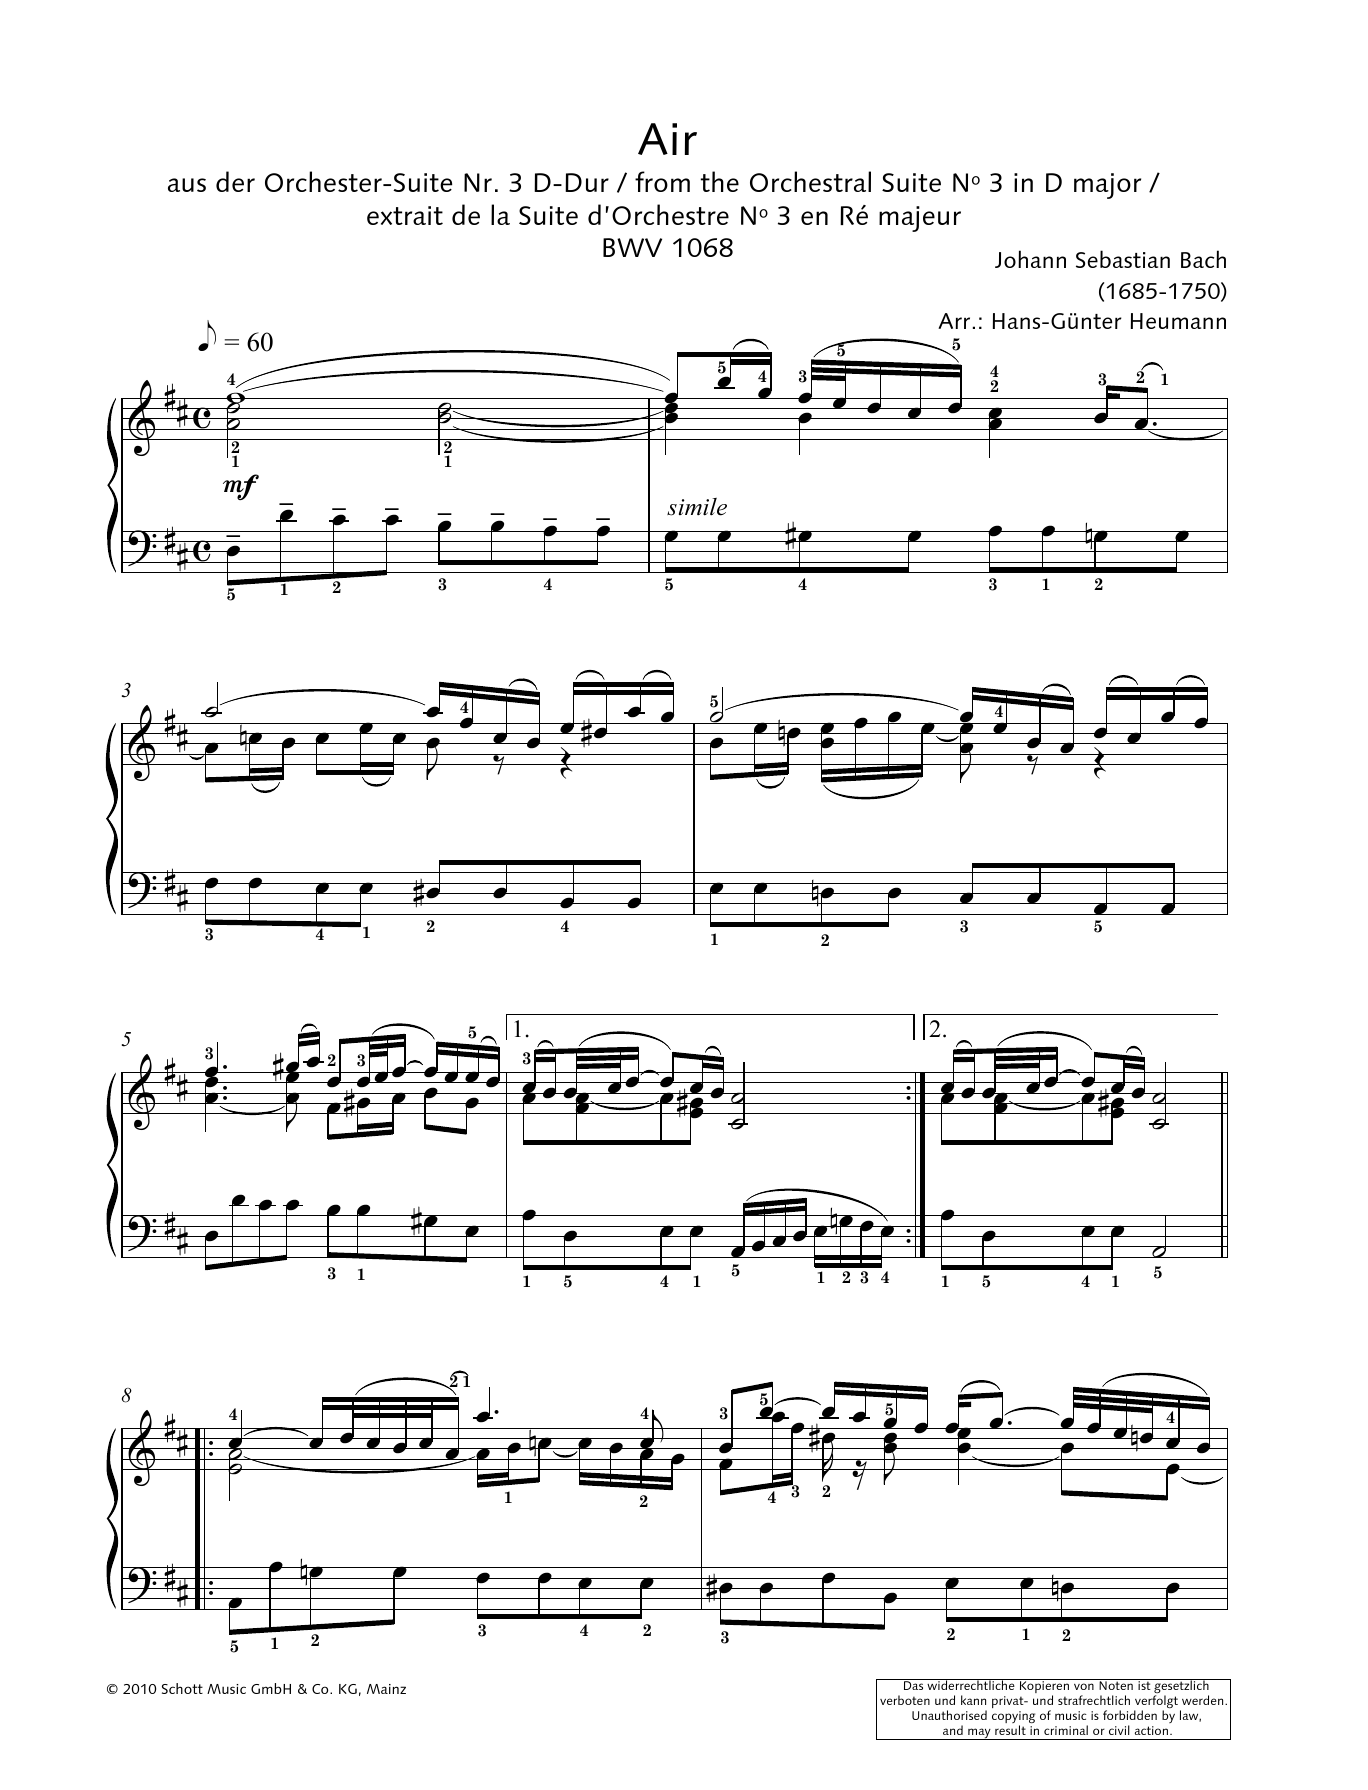 Johann Sebastian Bach Air Sheet Music Notes & Chords for Choral - Download or Print PDF